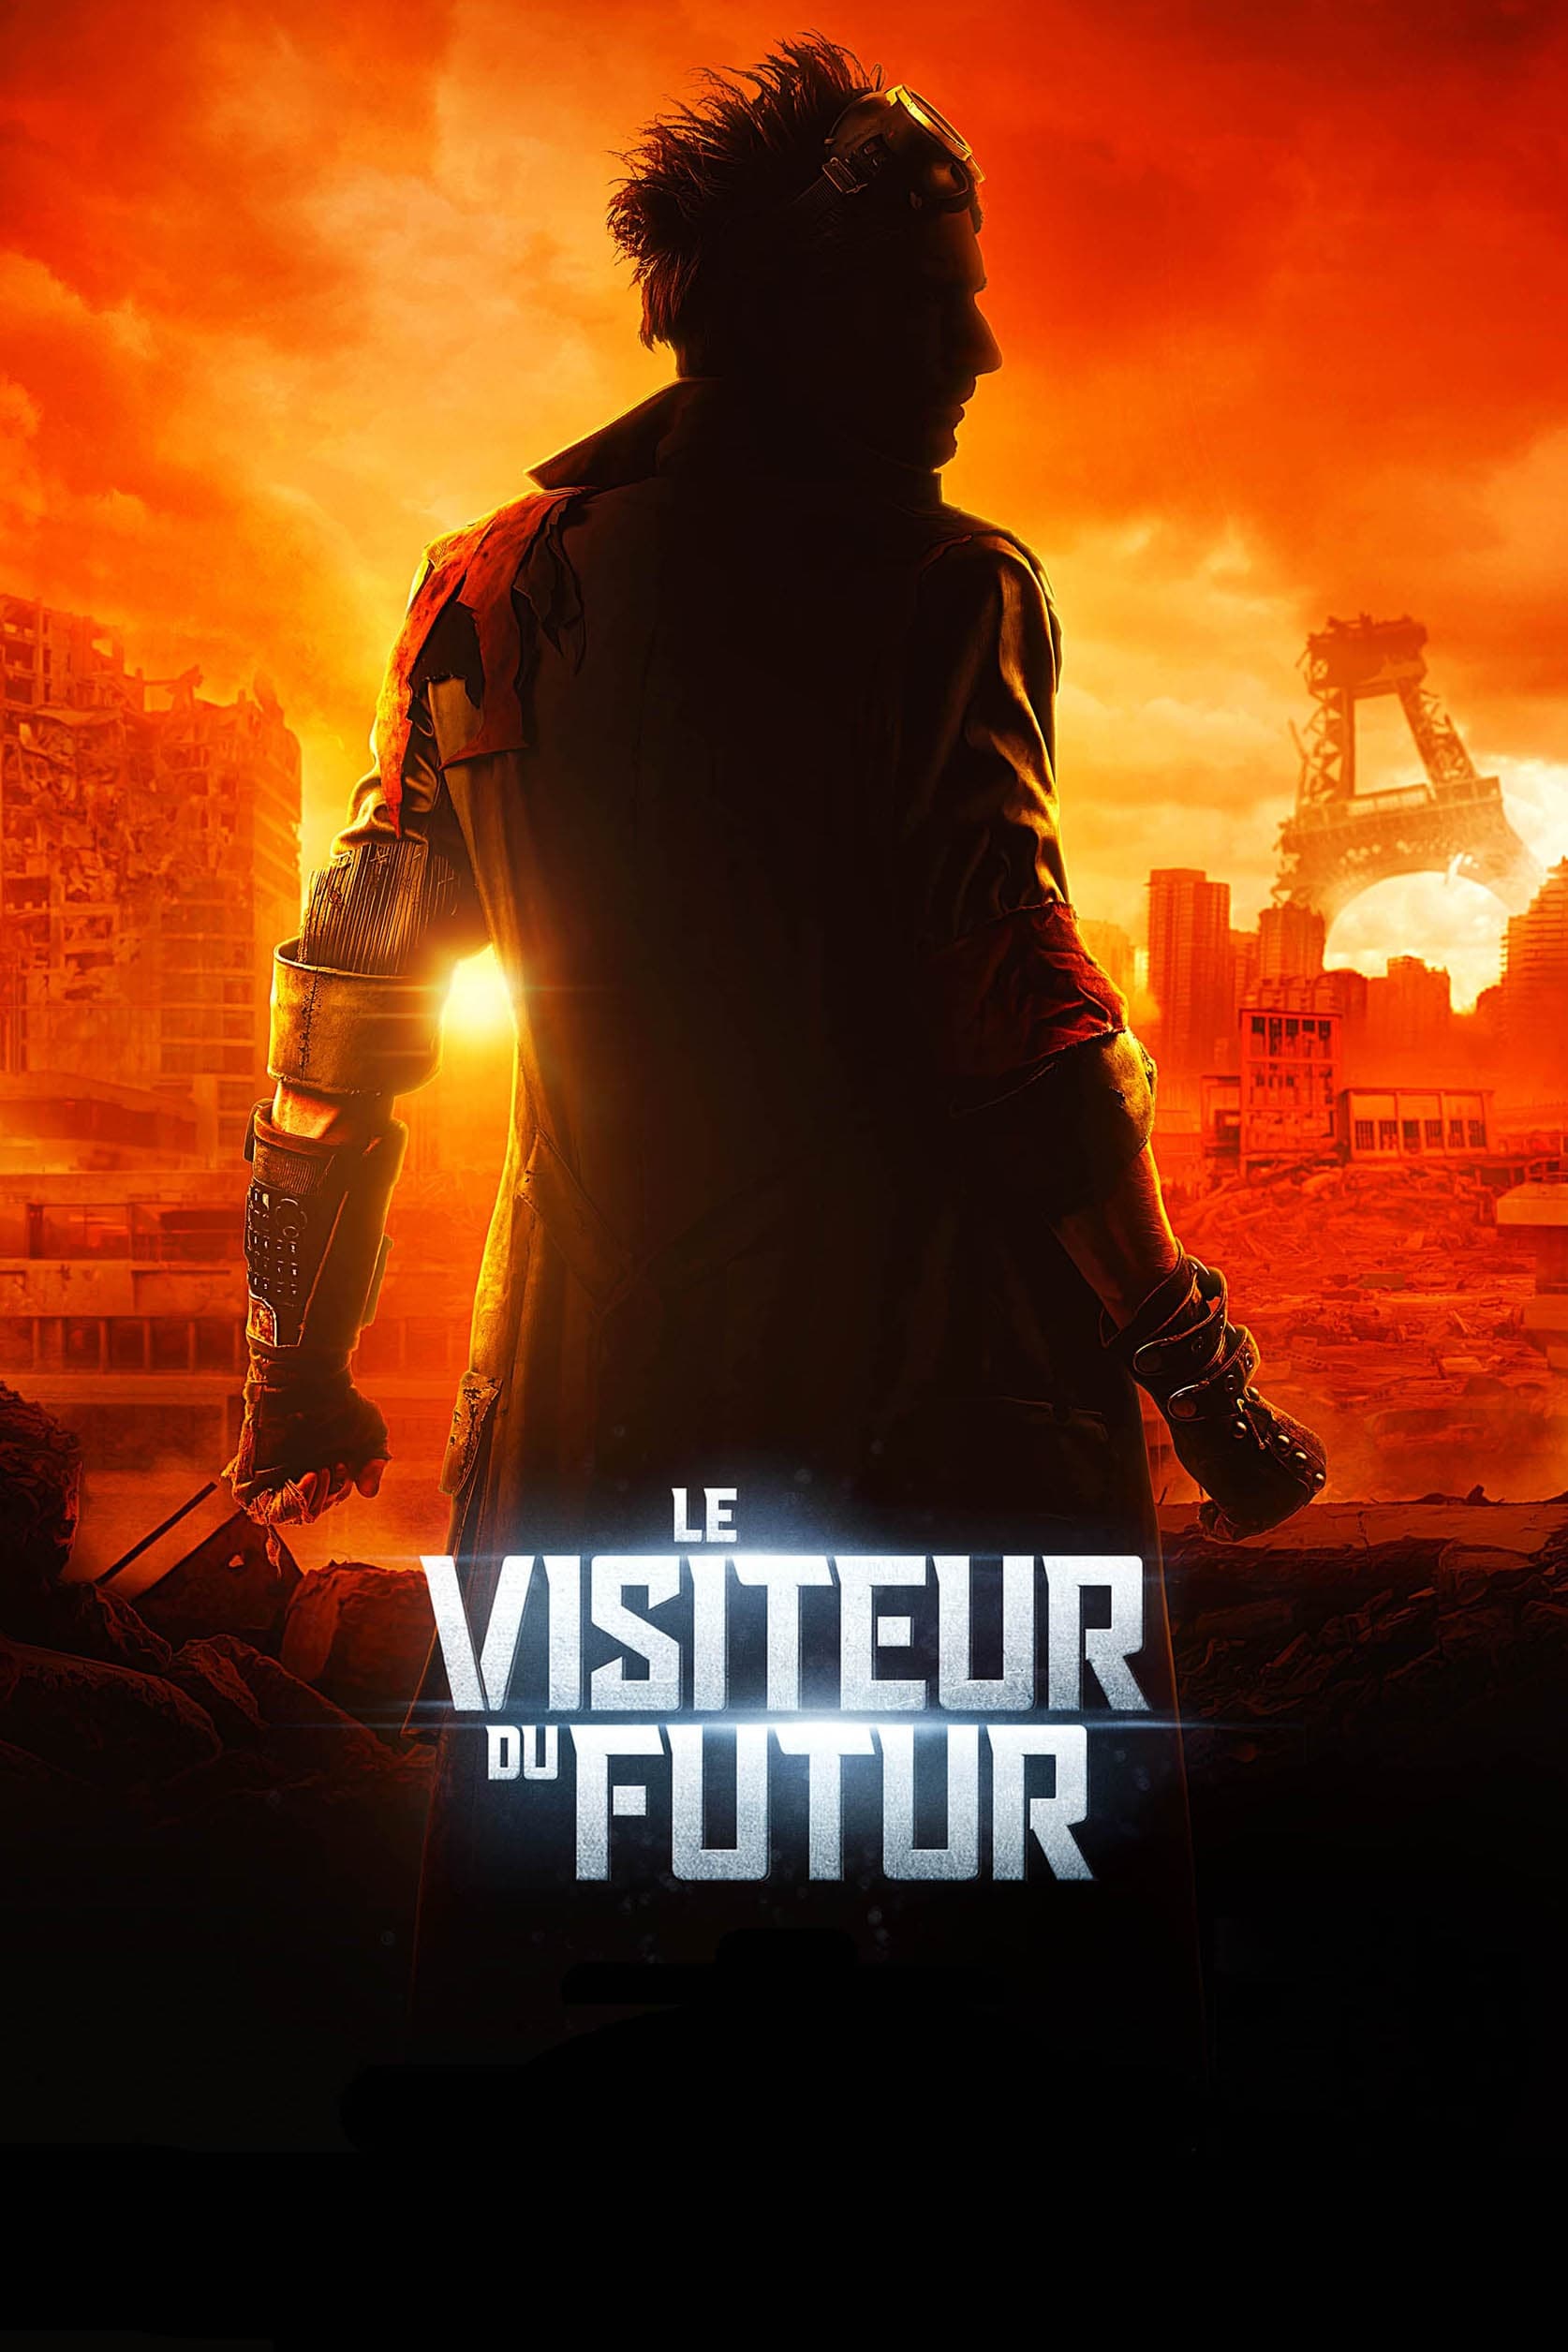 Affiche du film "Le Visiteur du Futur"